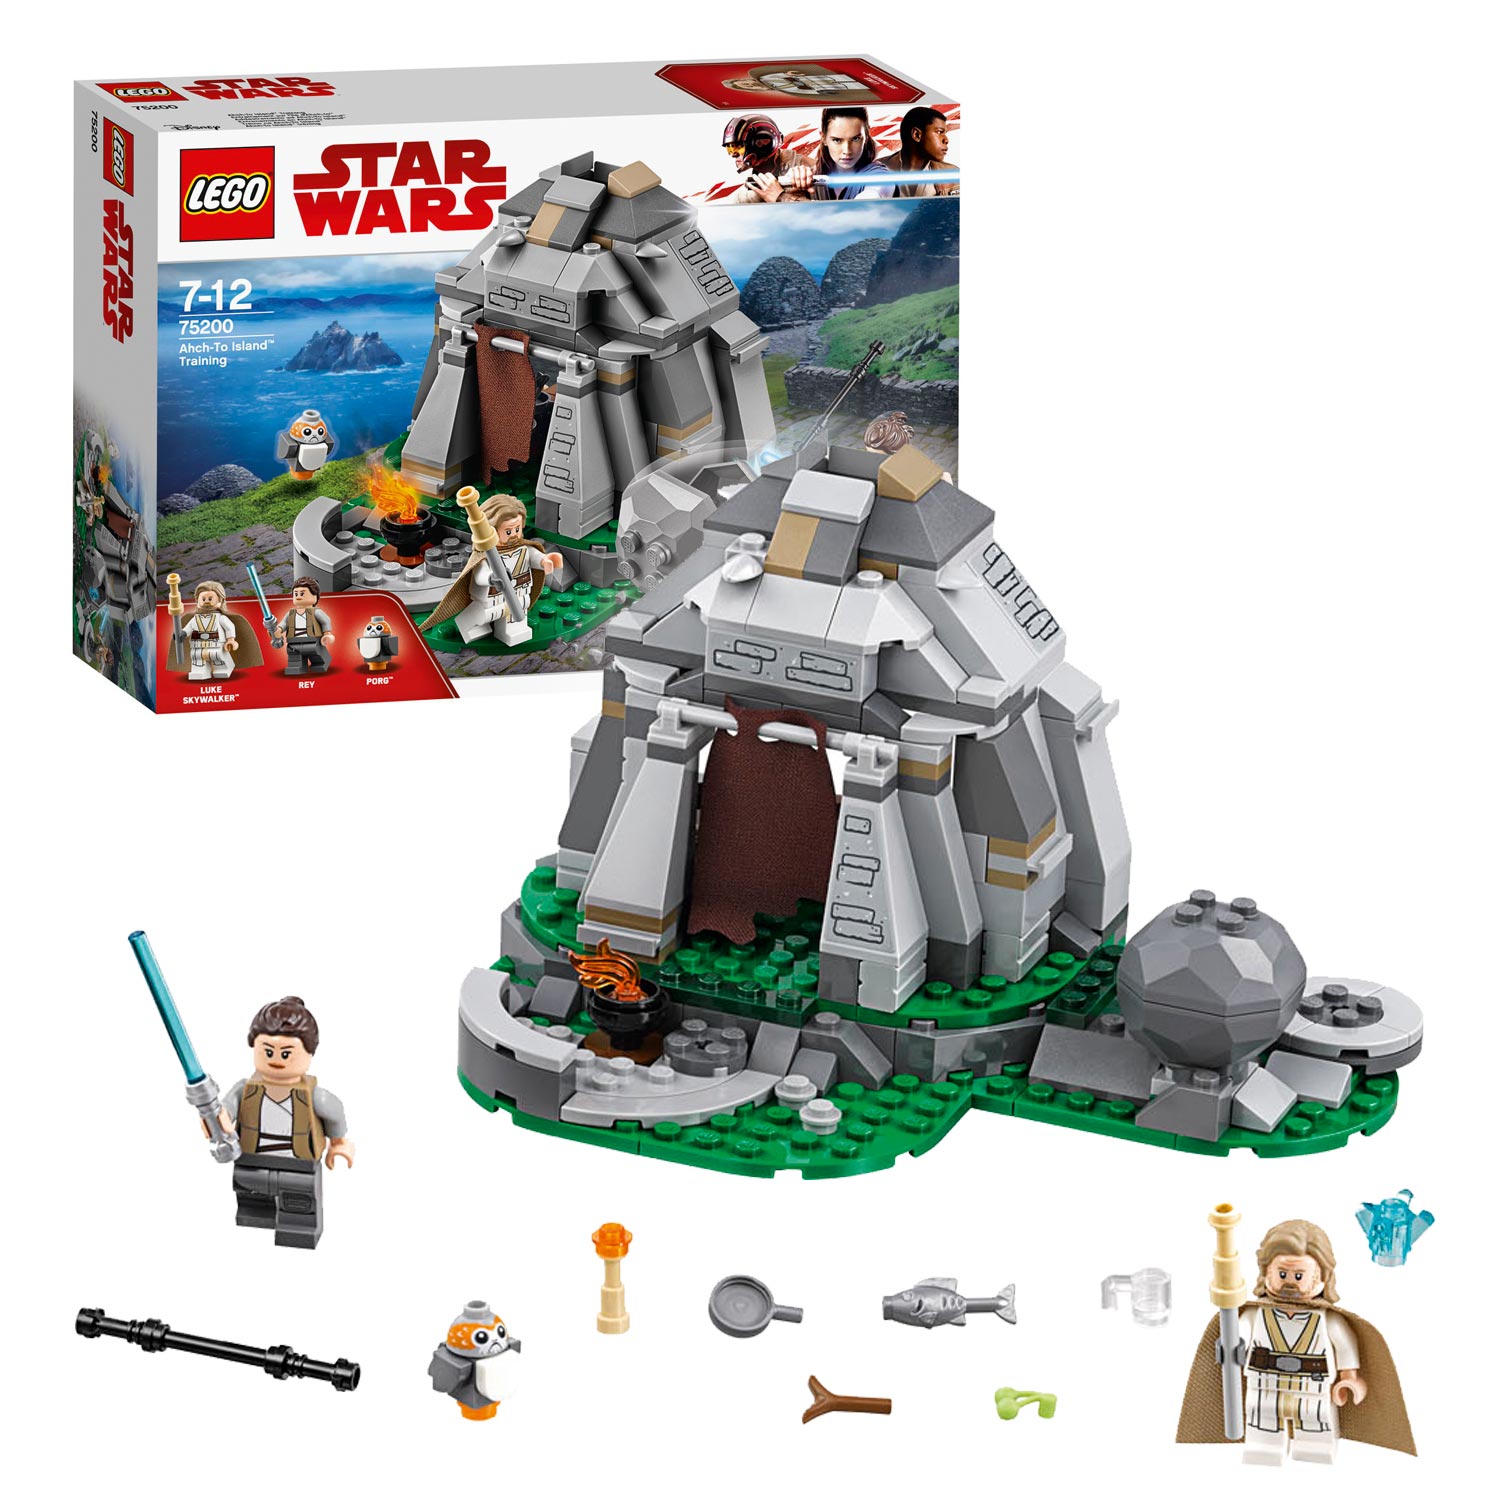 LEGO Star Wars 75200 Ahch-To Island training